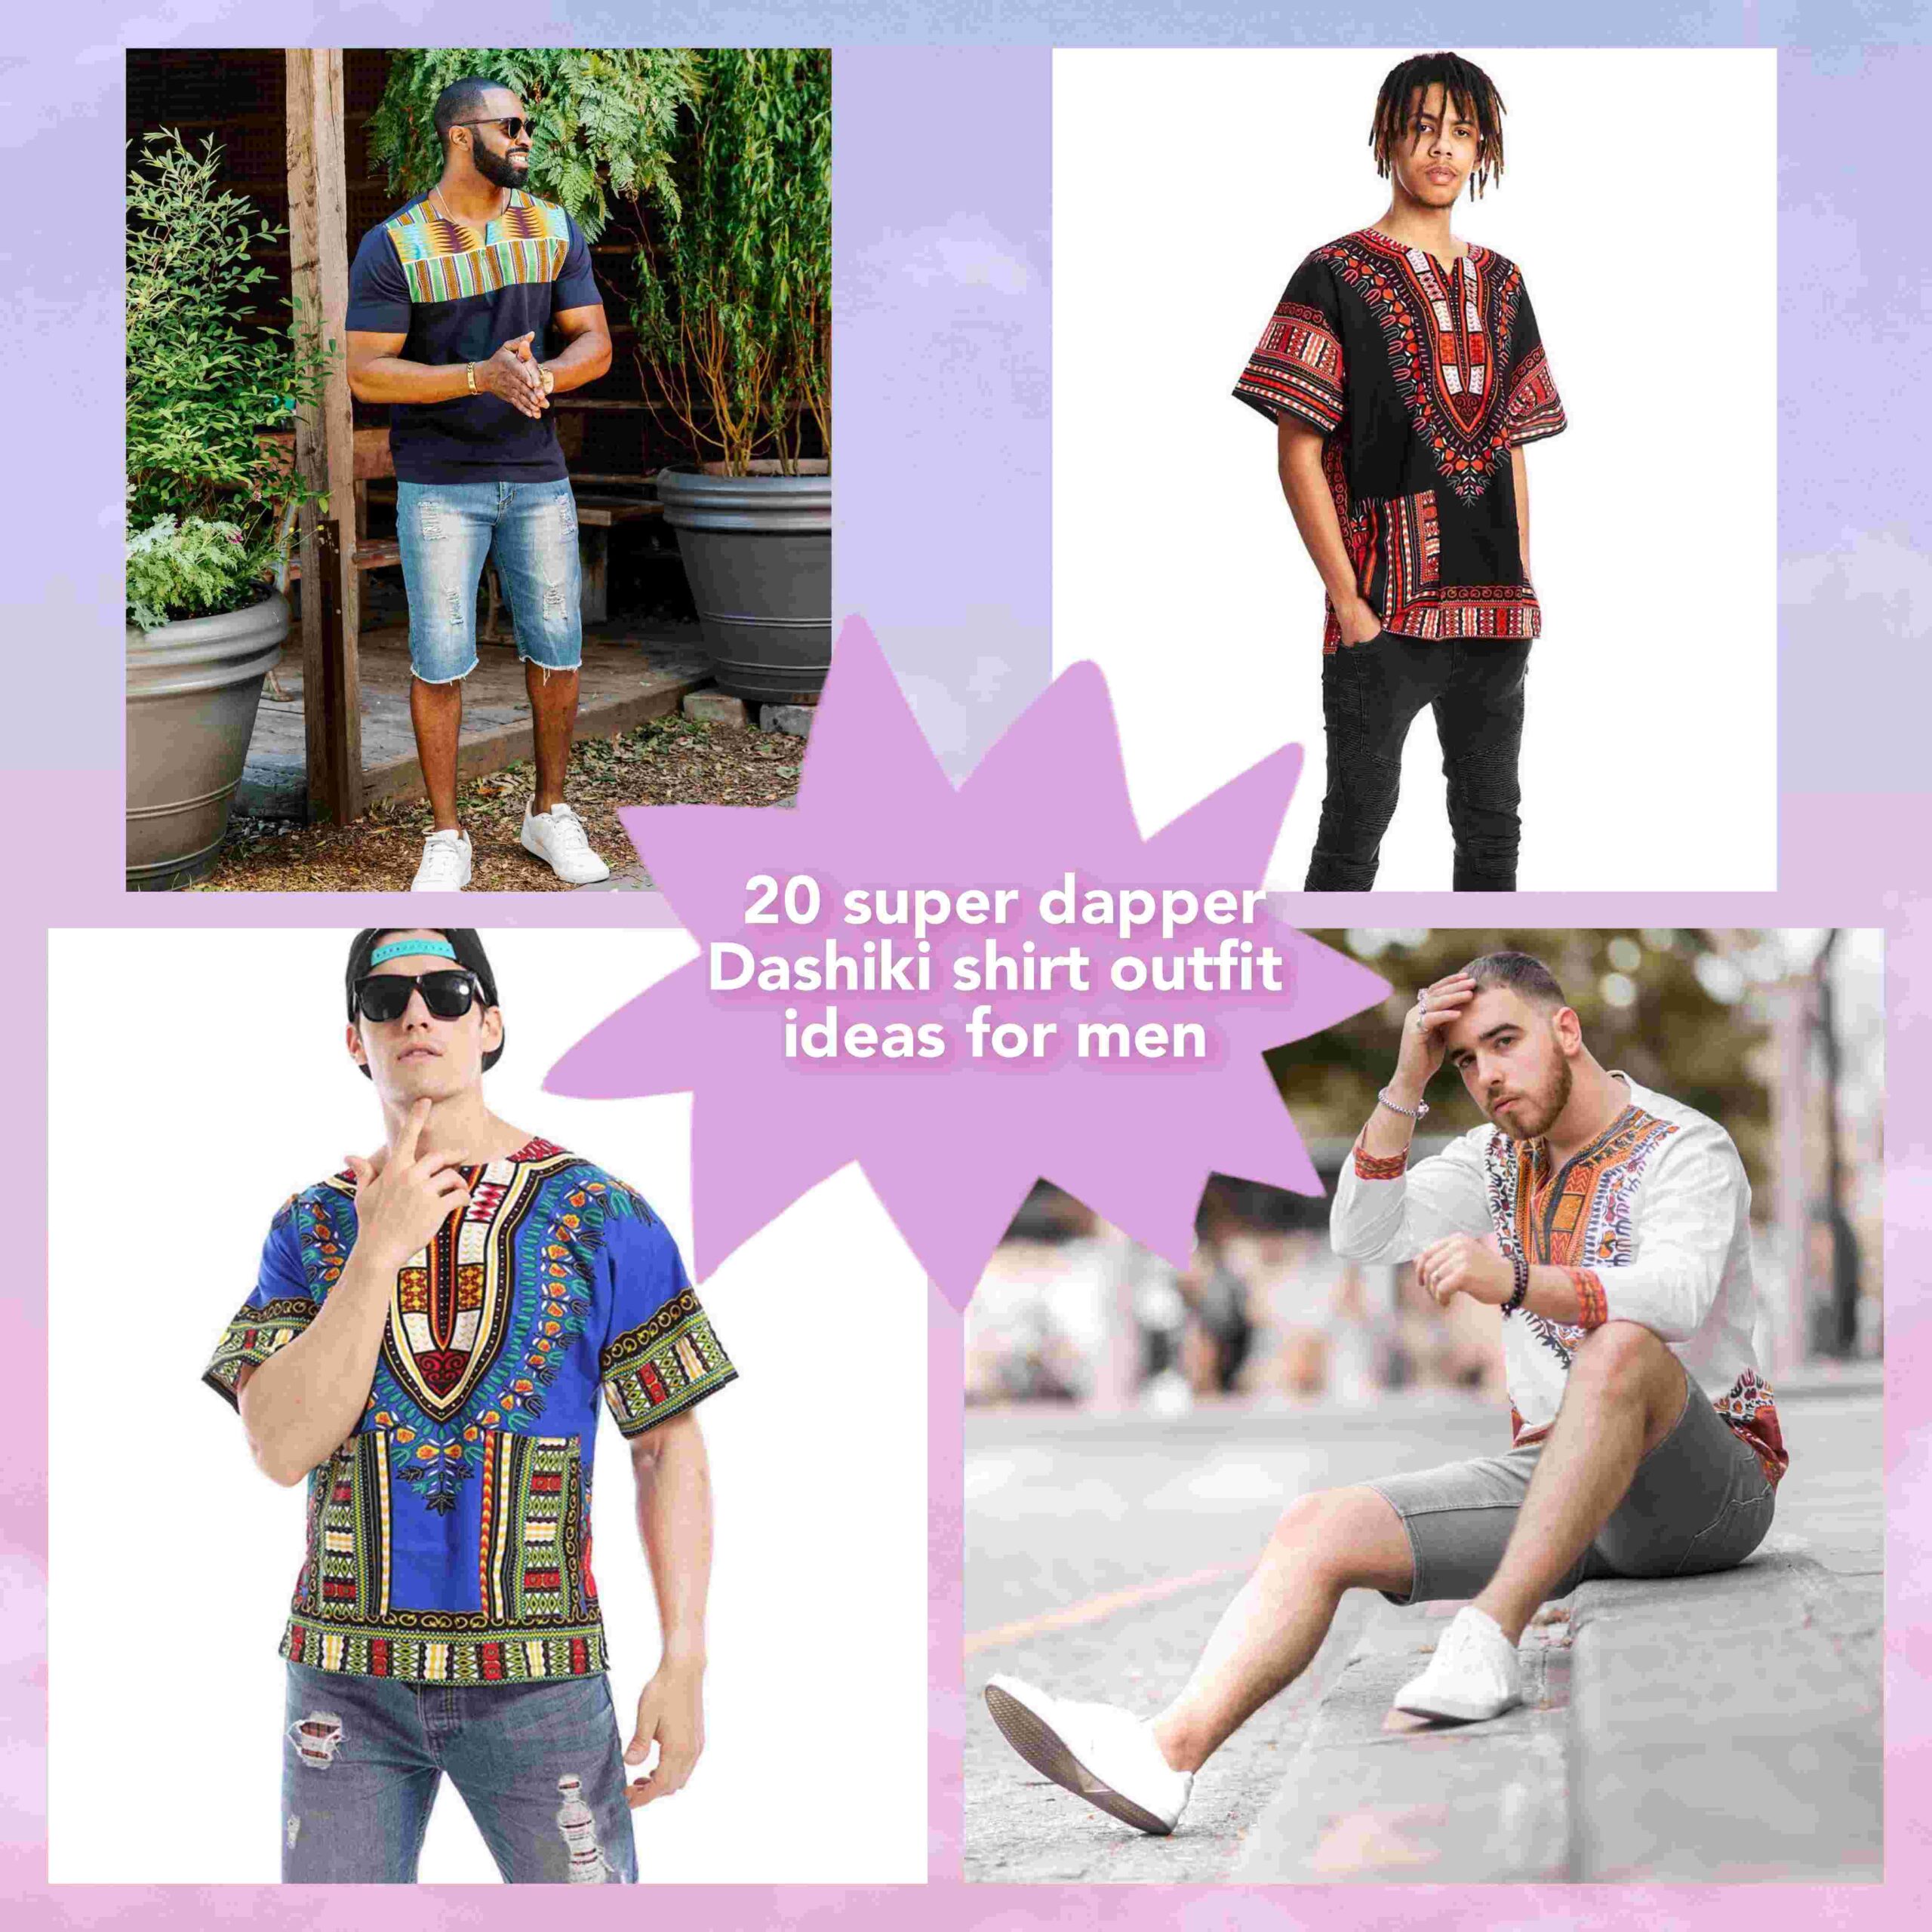 Dashiki shirt outfit ideas for men